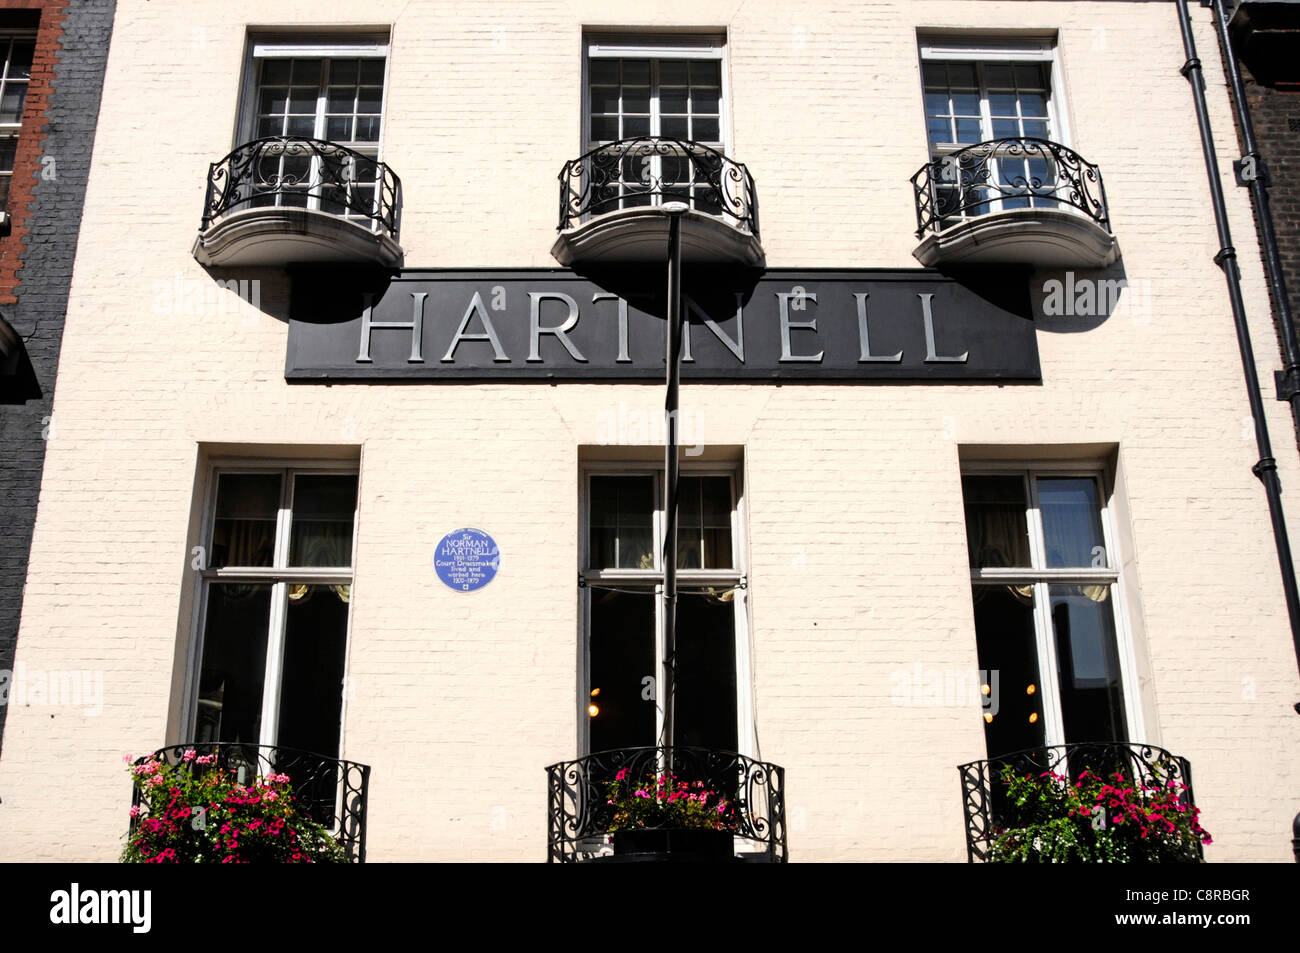 Sir Norman Hartnell Famous court Dressmaker locaux à Mayfair où il a vécu et travaillé de 1935 à 1979 à Bruton Street Mayfair Londres Angleterre Royaume-Uni Banque D'Images